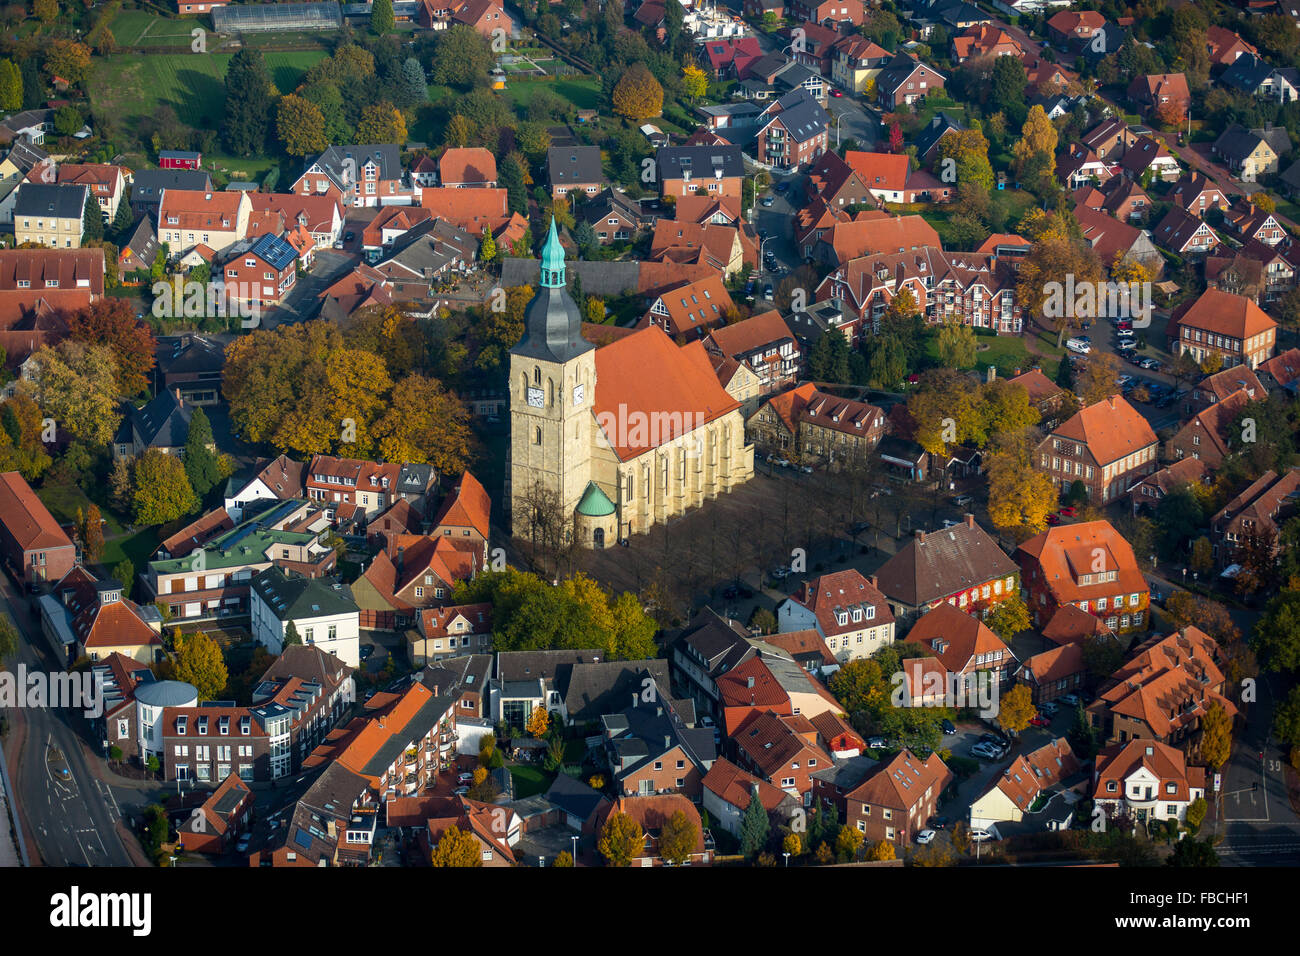 Vista aerea, city centre, St. Martinus Chiesa Nottuln, tetti in tegole rosse, Nottuln, Münsterland, Renania settentrionale-Vestfalia, Germania, Foto Stock